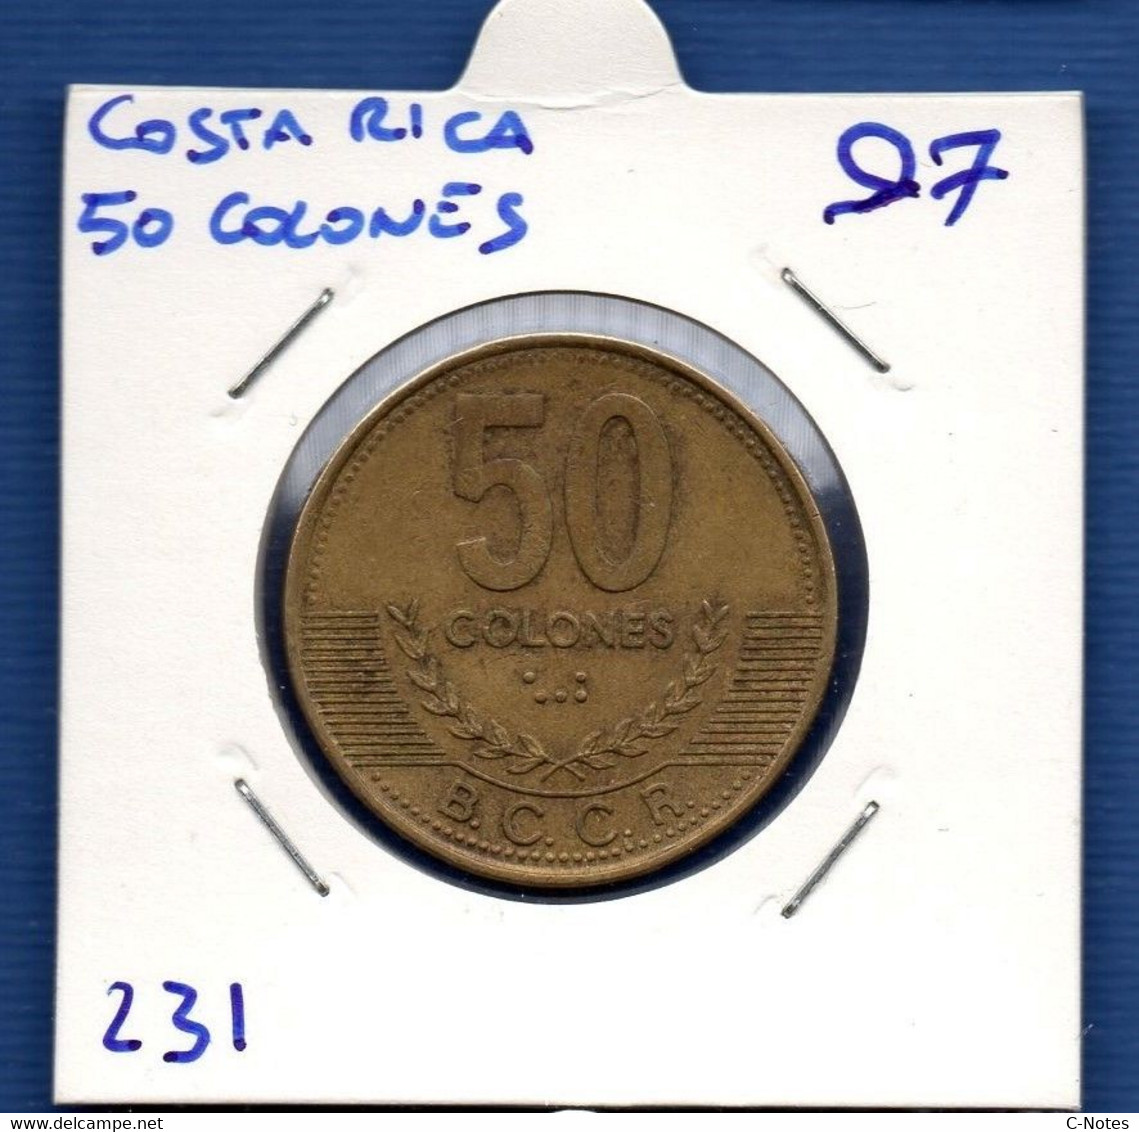 COSTA RICA - 50 Colones 1997 -  See Photos -  Km 231 - Costa Rica